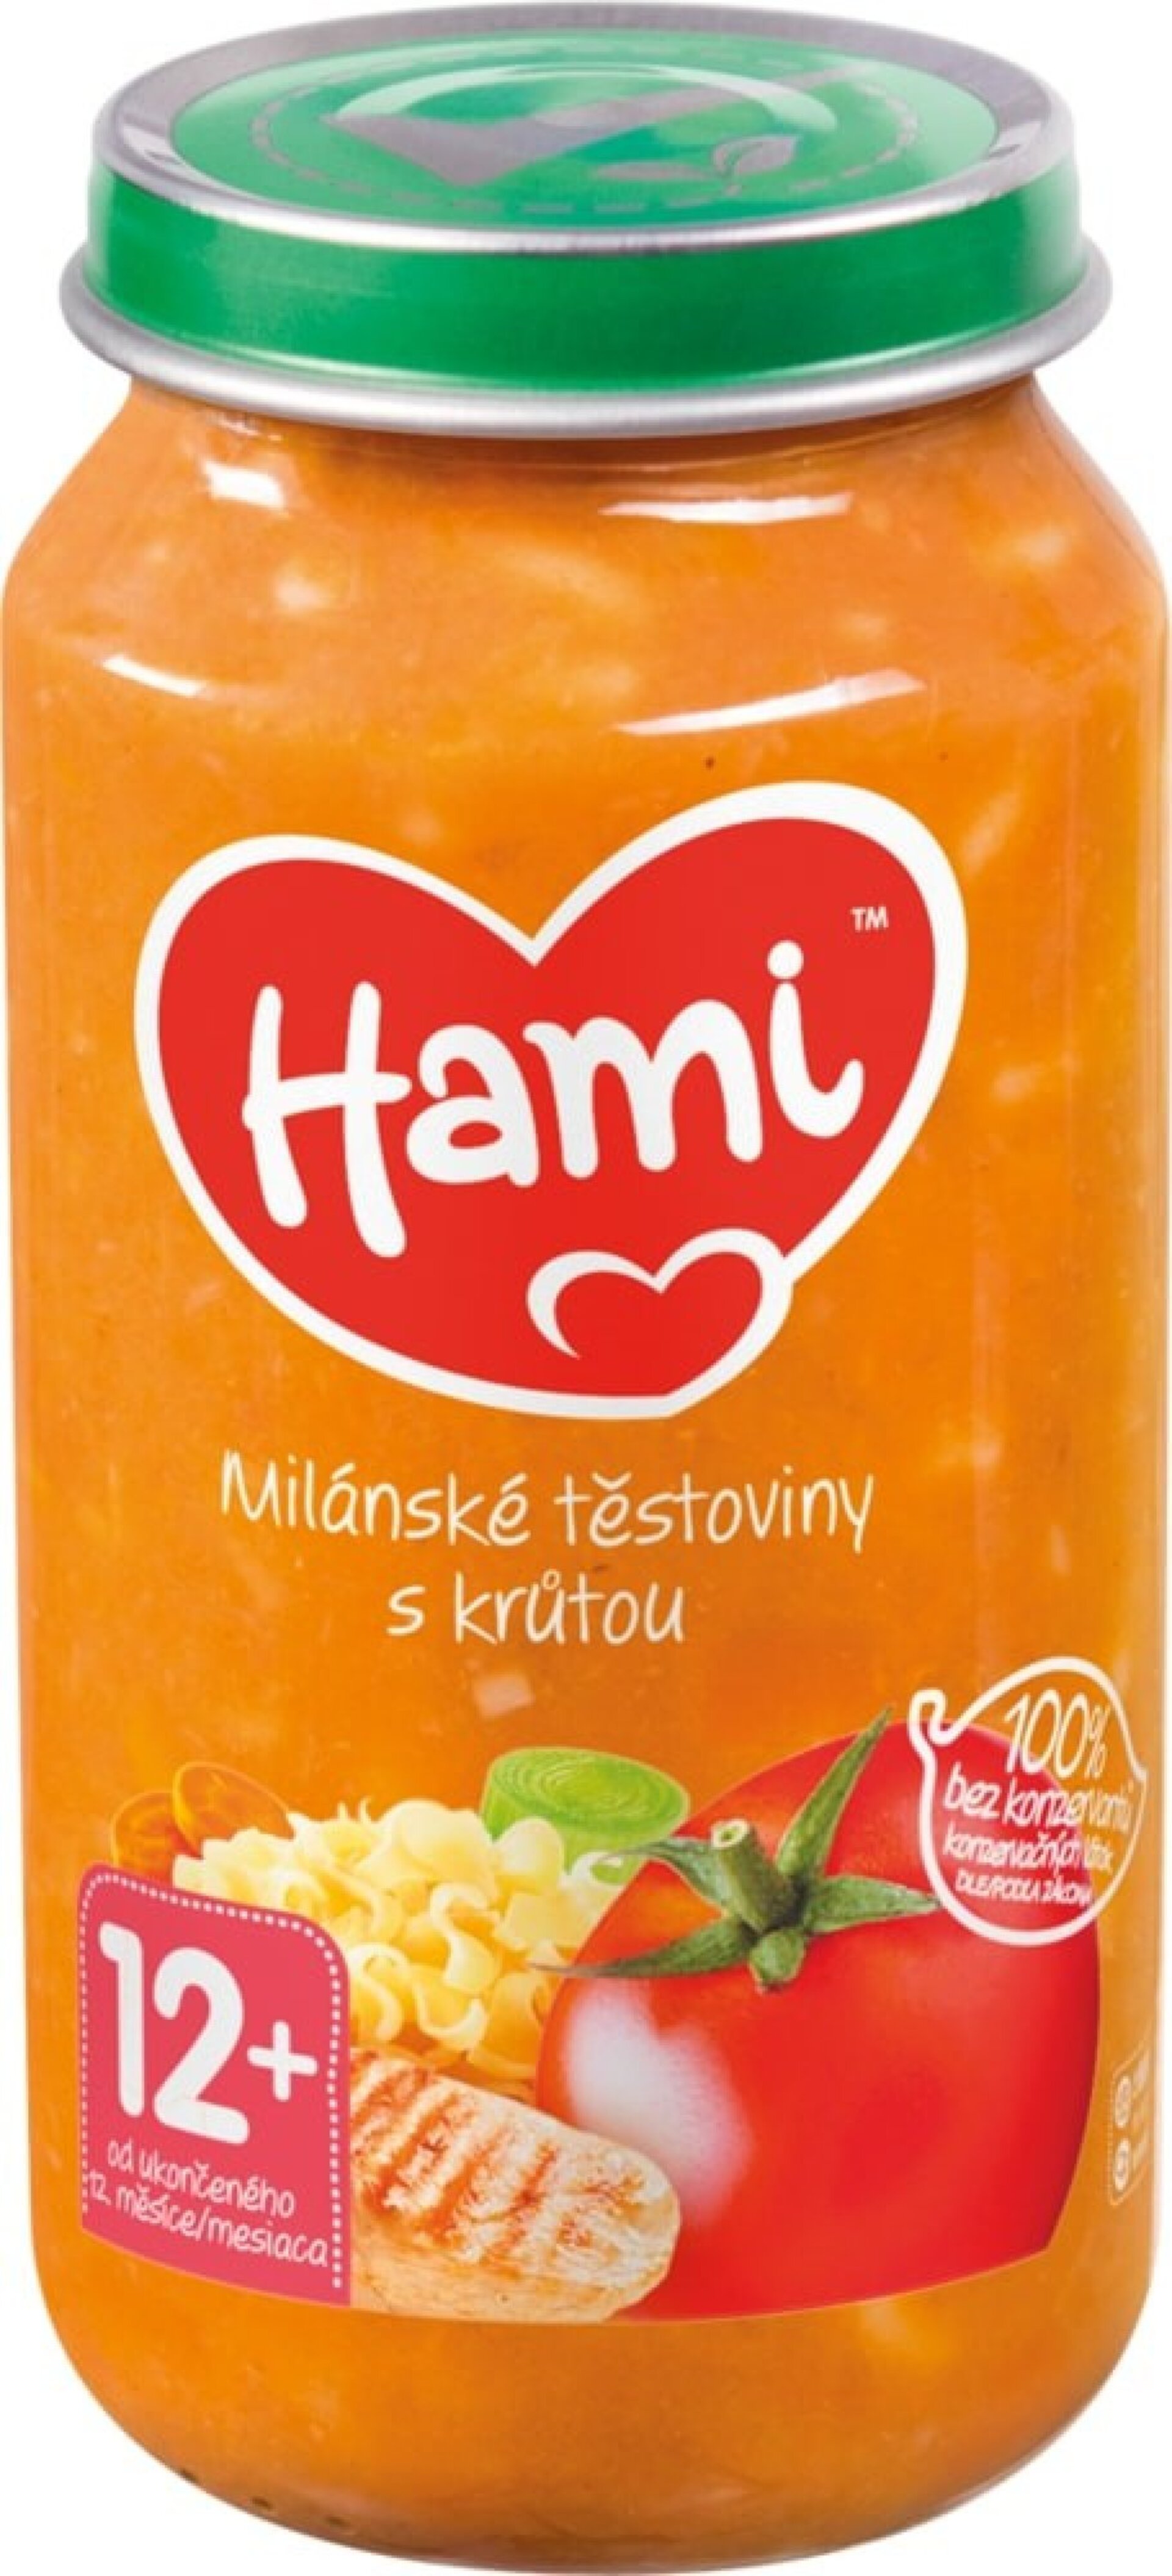 E-shop Hami Mäsozeleninový príkrm Milánske cestoviny s morkou 250 g